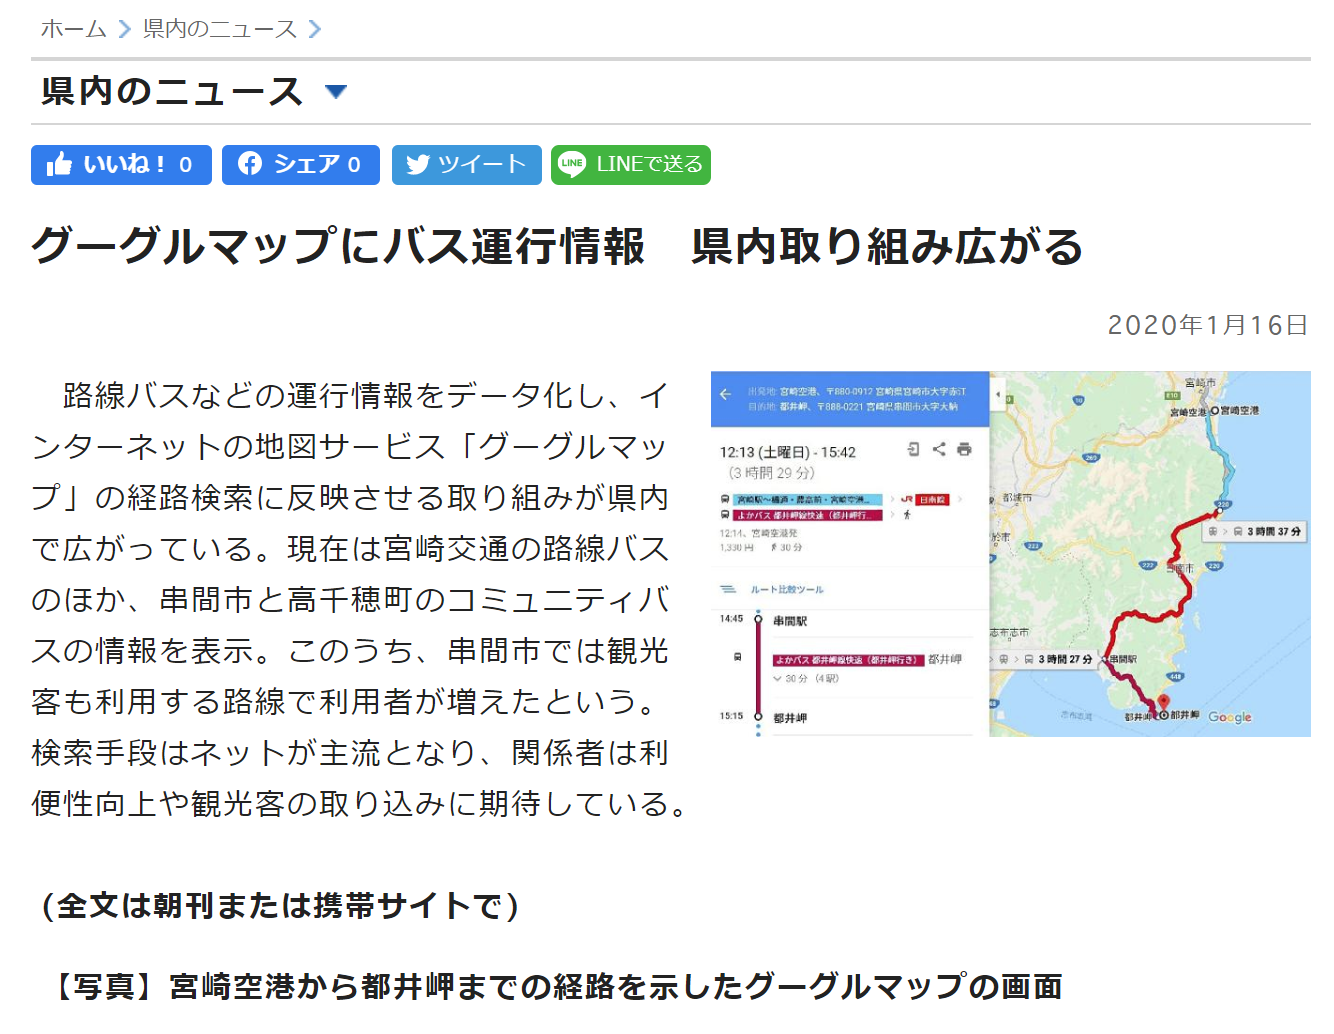 宮崎交通グーグルマップ対応